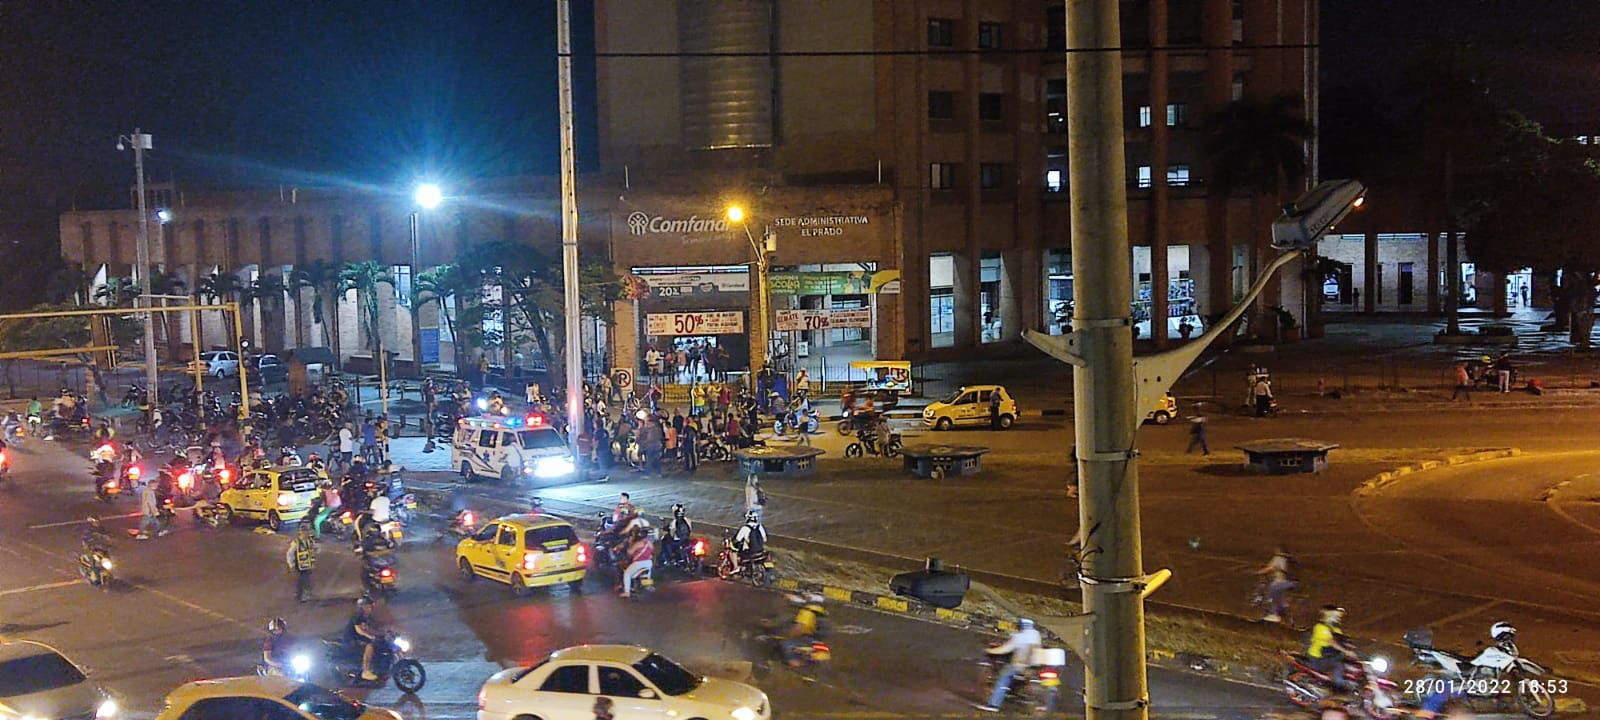 confirman-atentado-contra-policias-en-ciudad-colombiana-de-cali